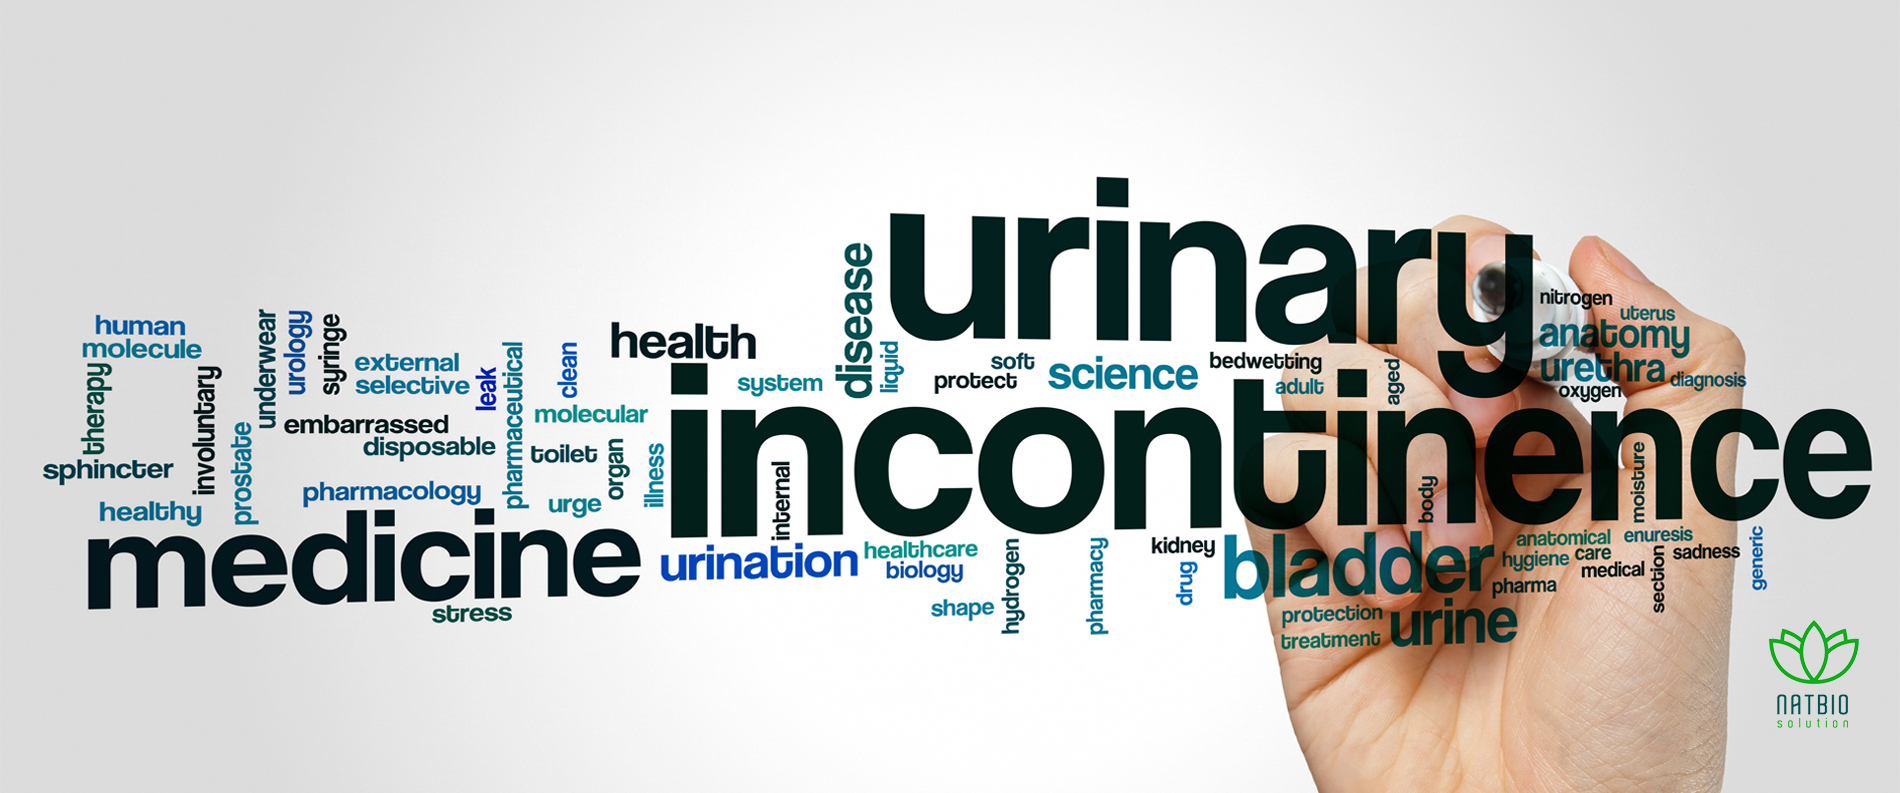 Remedii pentru reducerea frecvenței nicturiei și incontinenței urinare